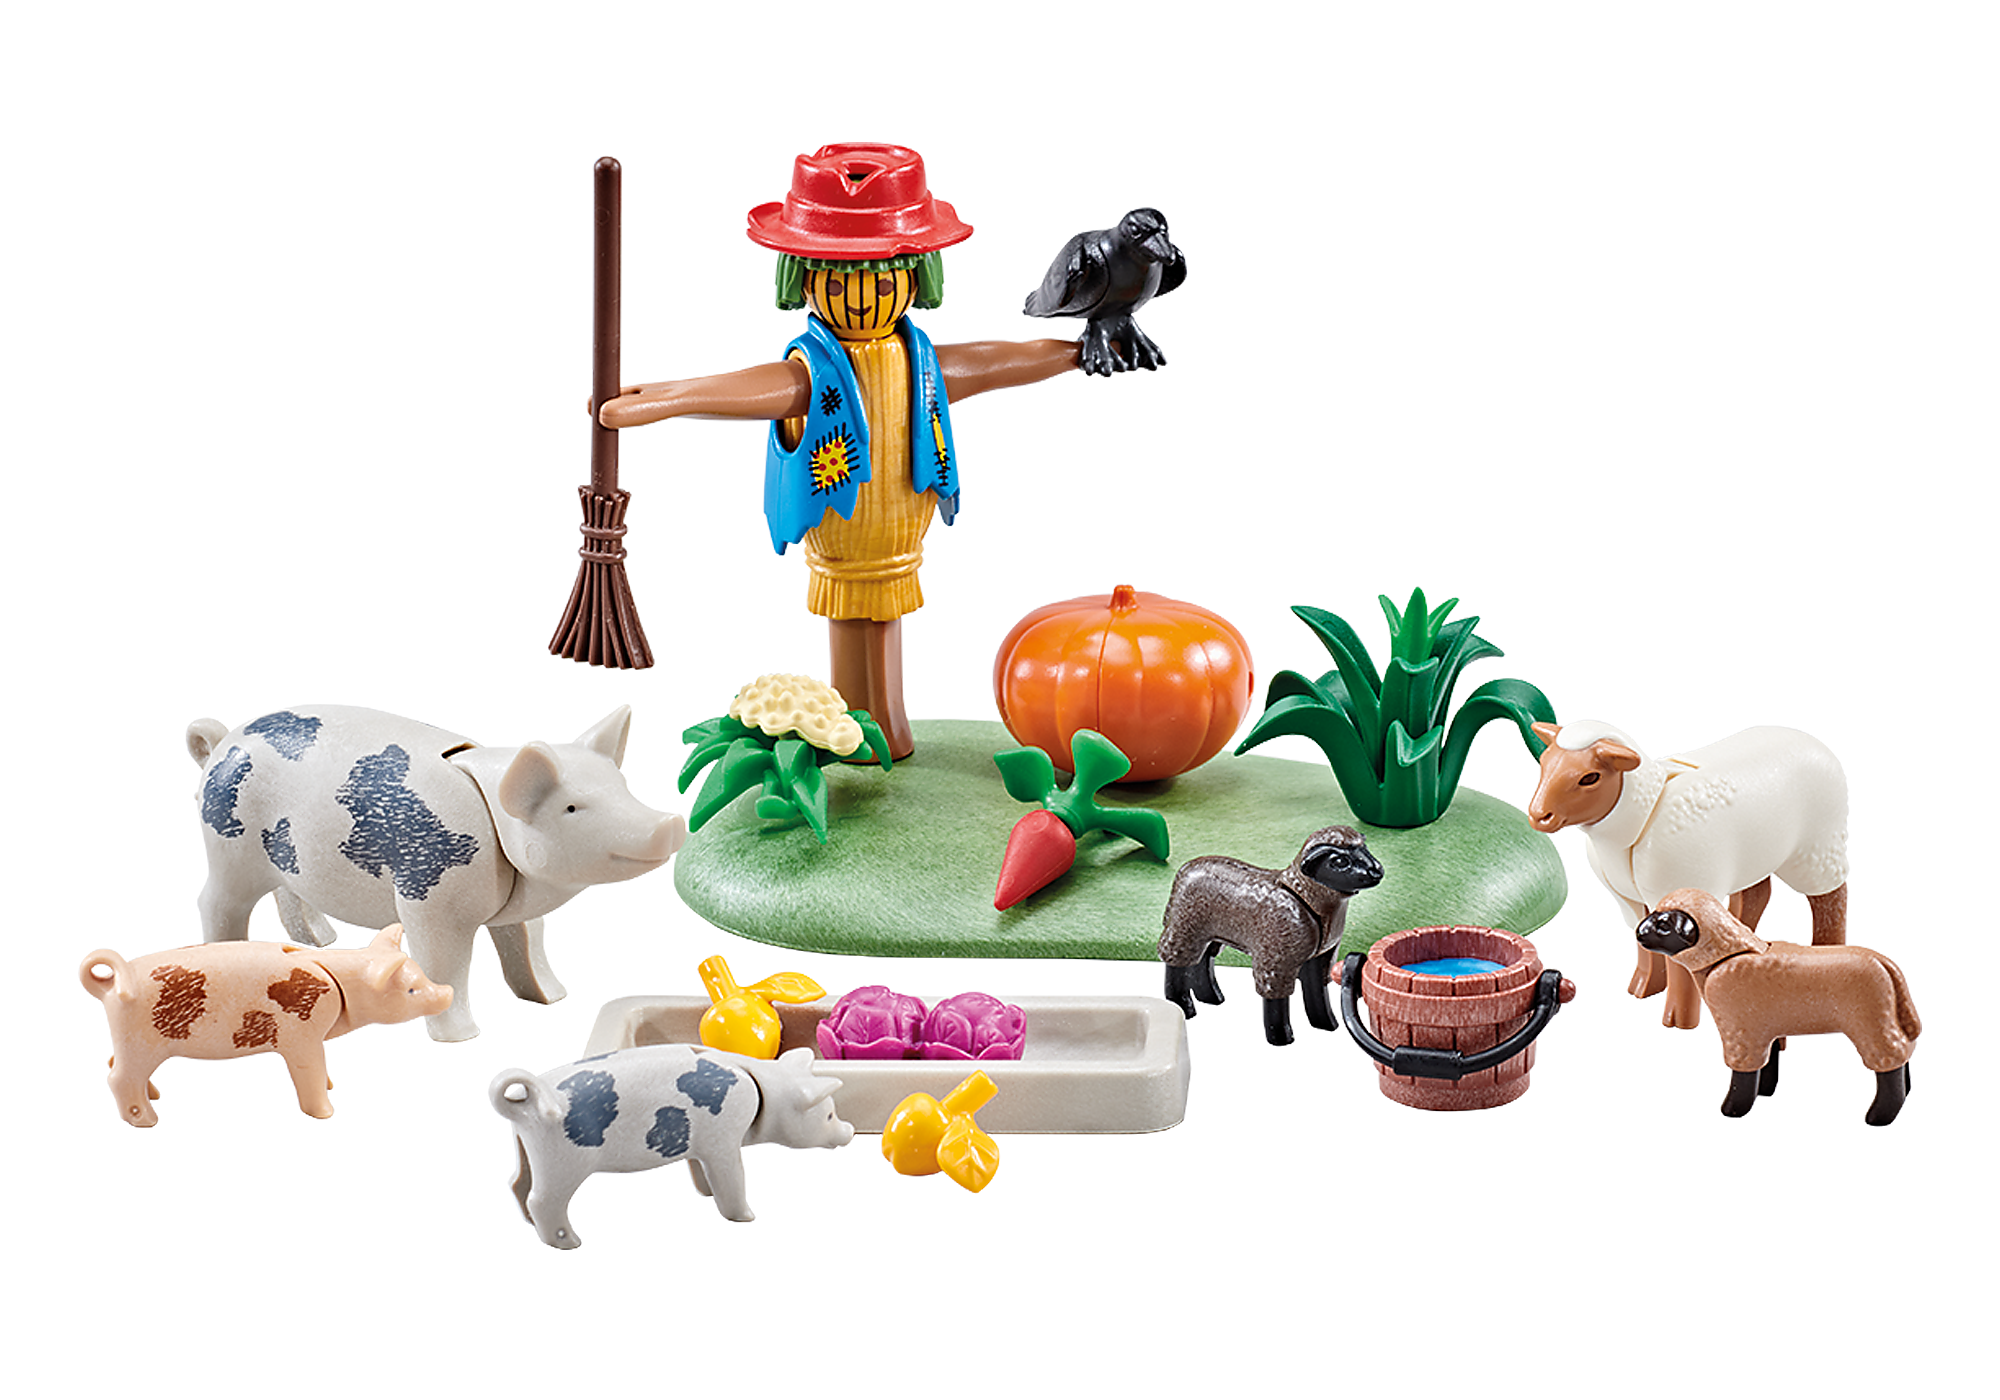 71307 - Playmobil Country - Animaux de la ferme Playmobil : King Jouet, Playmobil  Playmobil - Jeux d'imitation & Mondes imaginaires